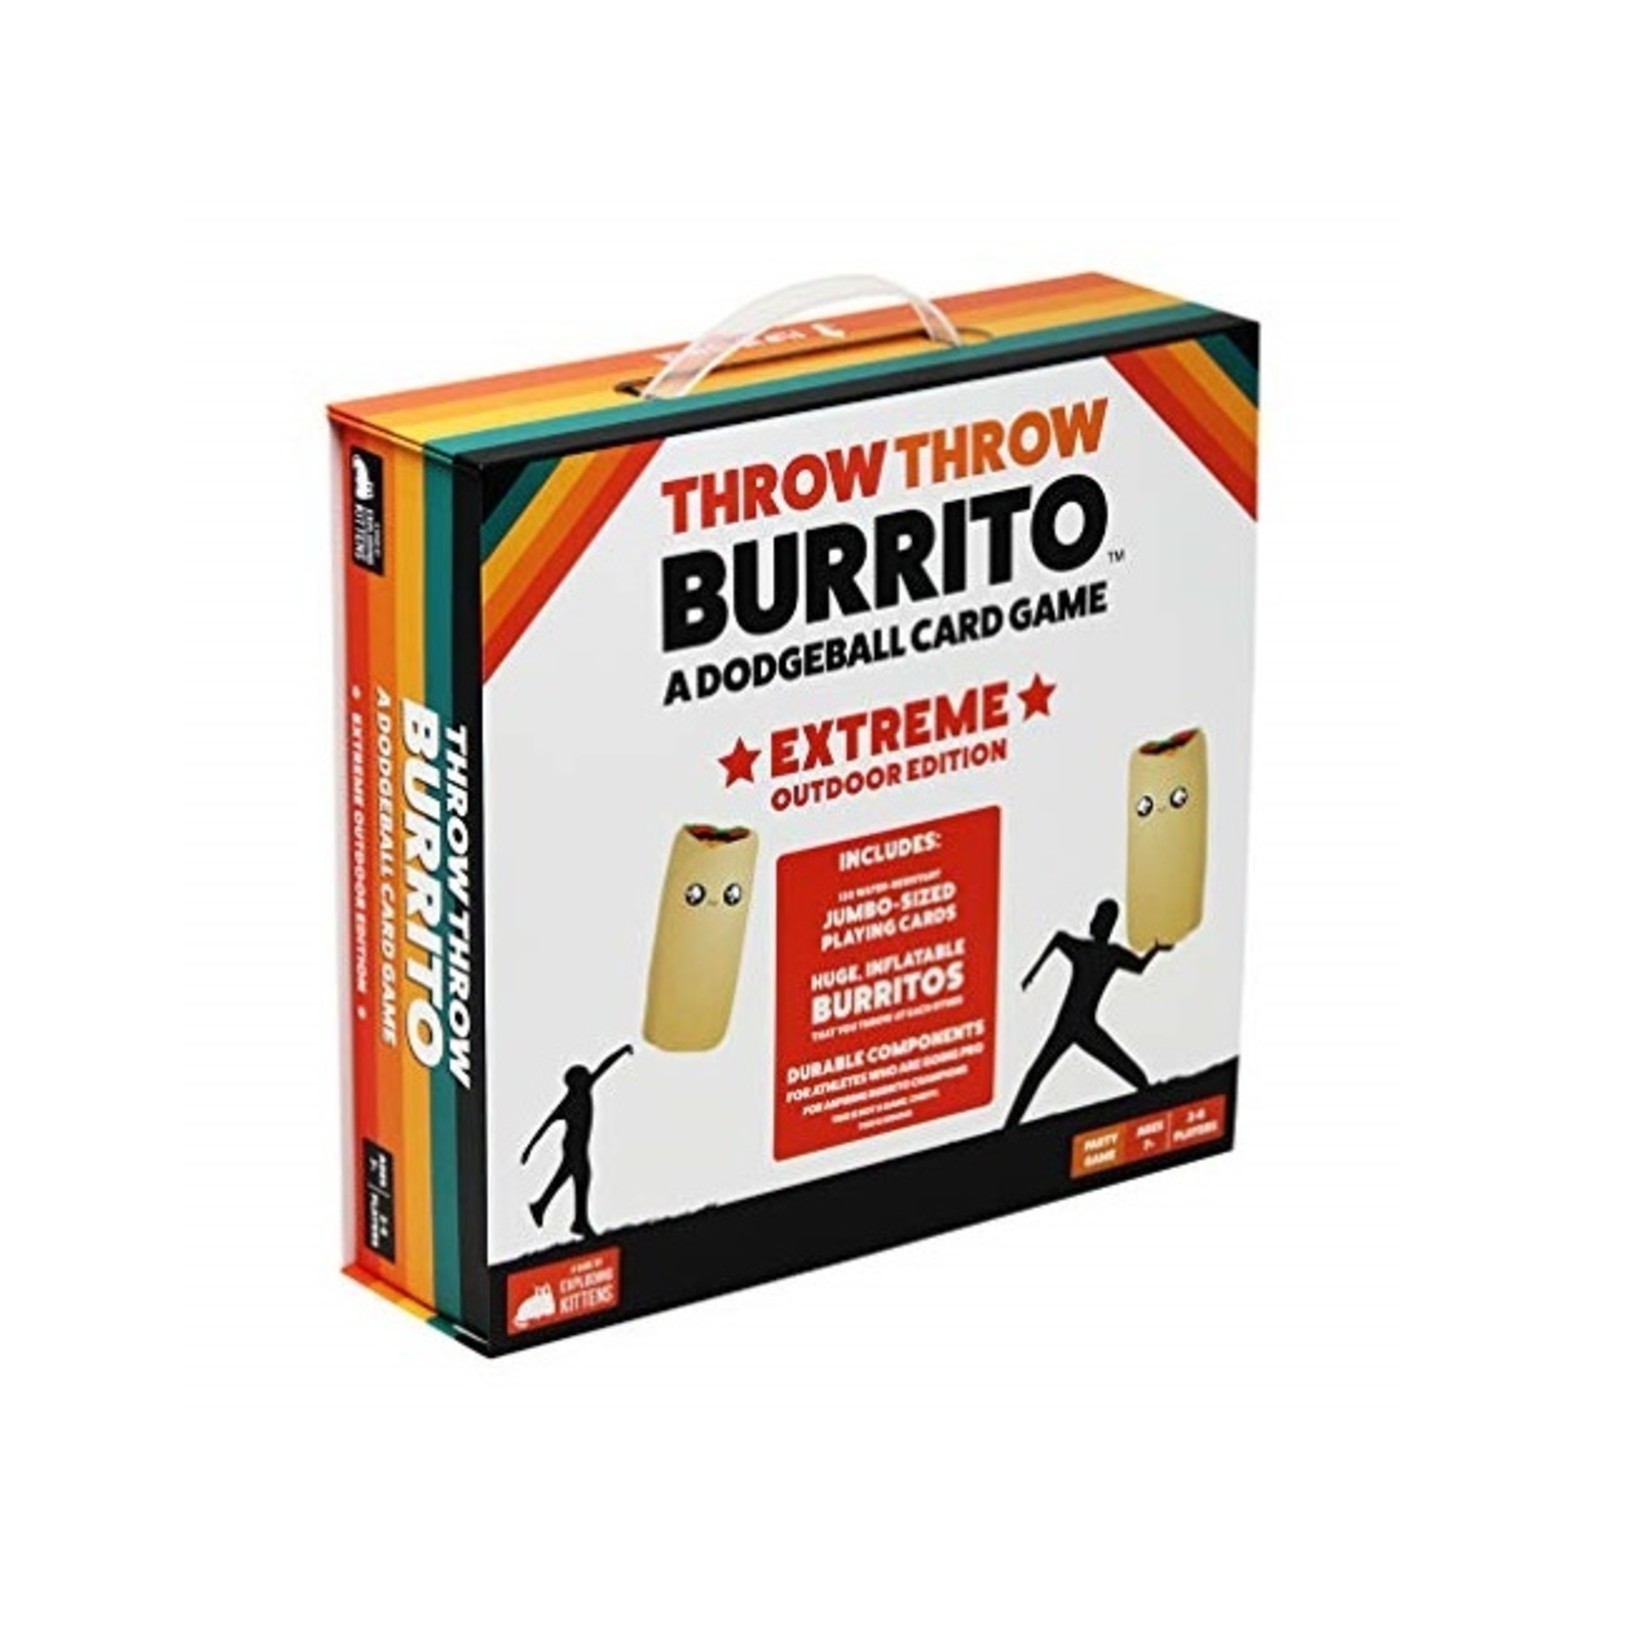 Exploding Kittens Throw throw burrito - Extreme outdoor edition (English)